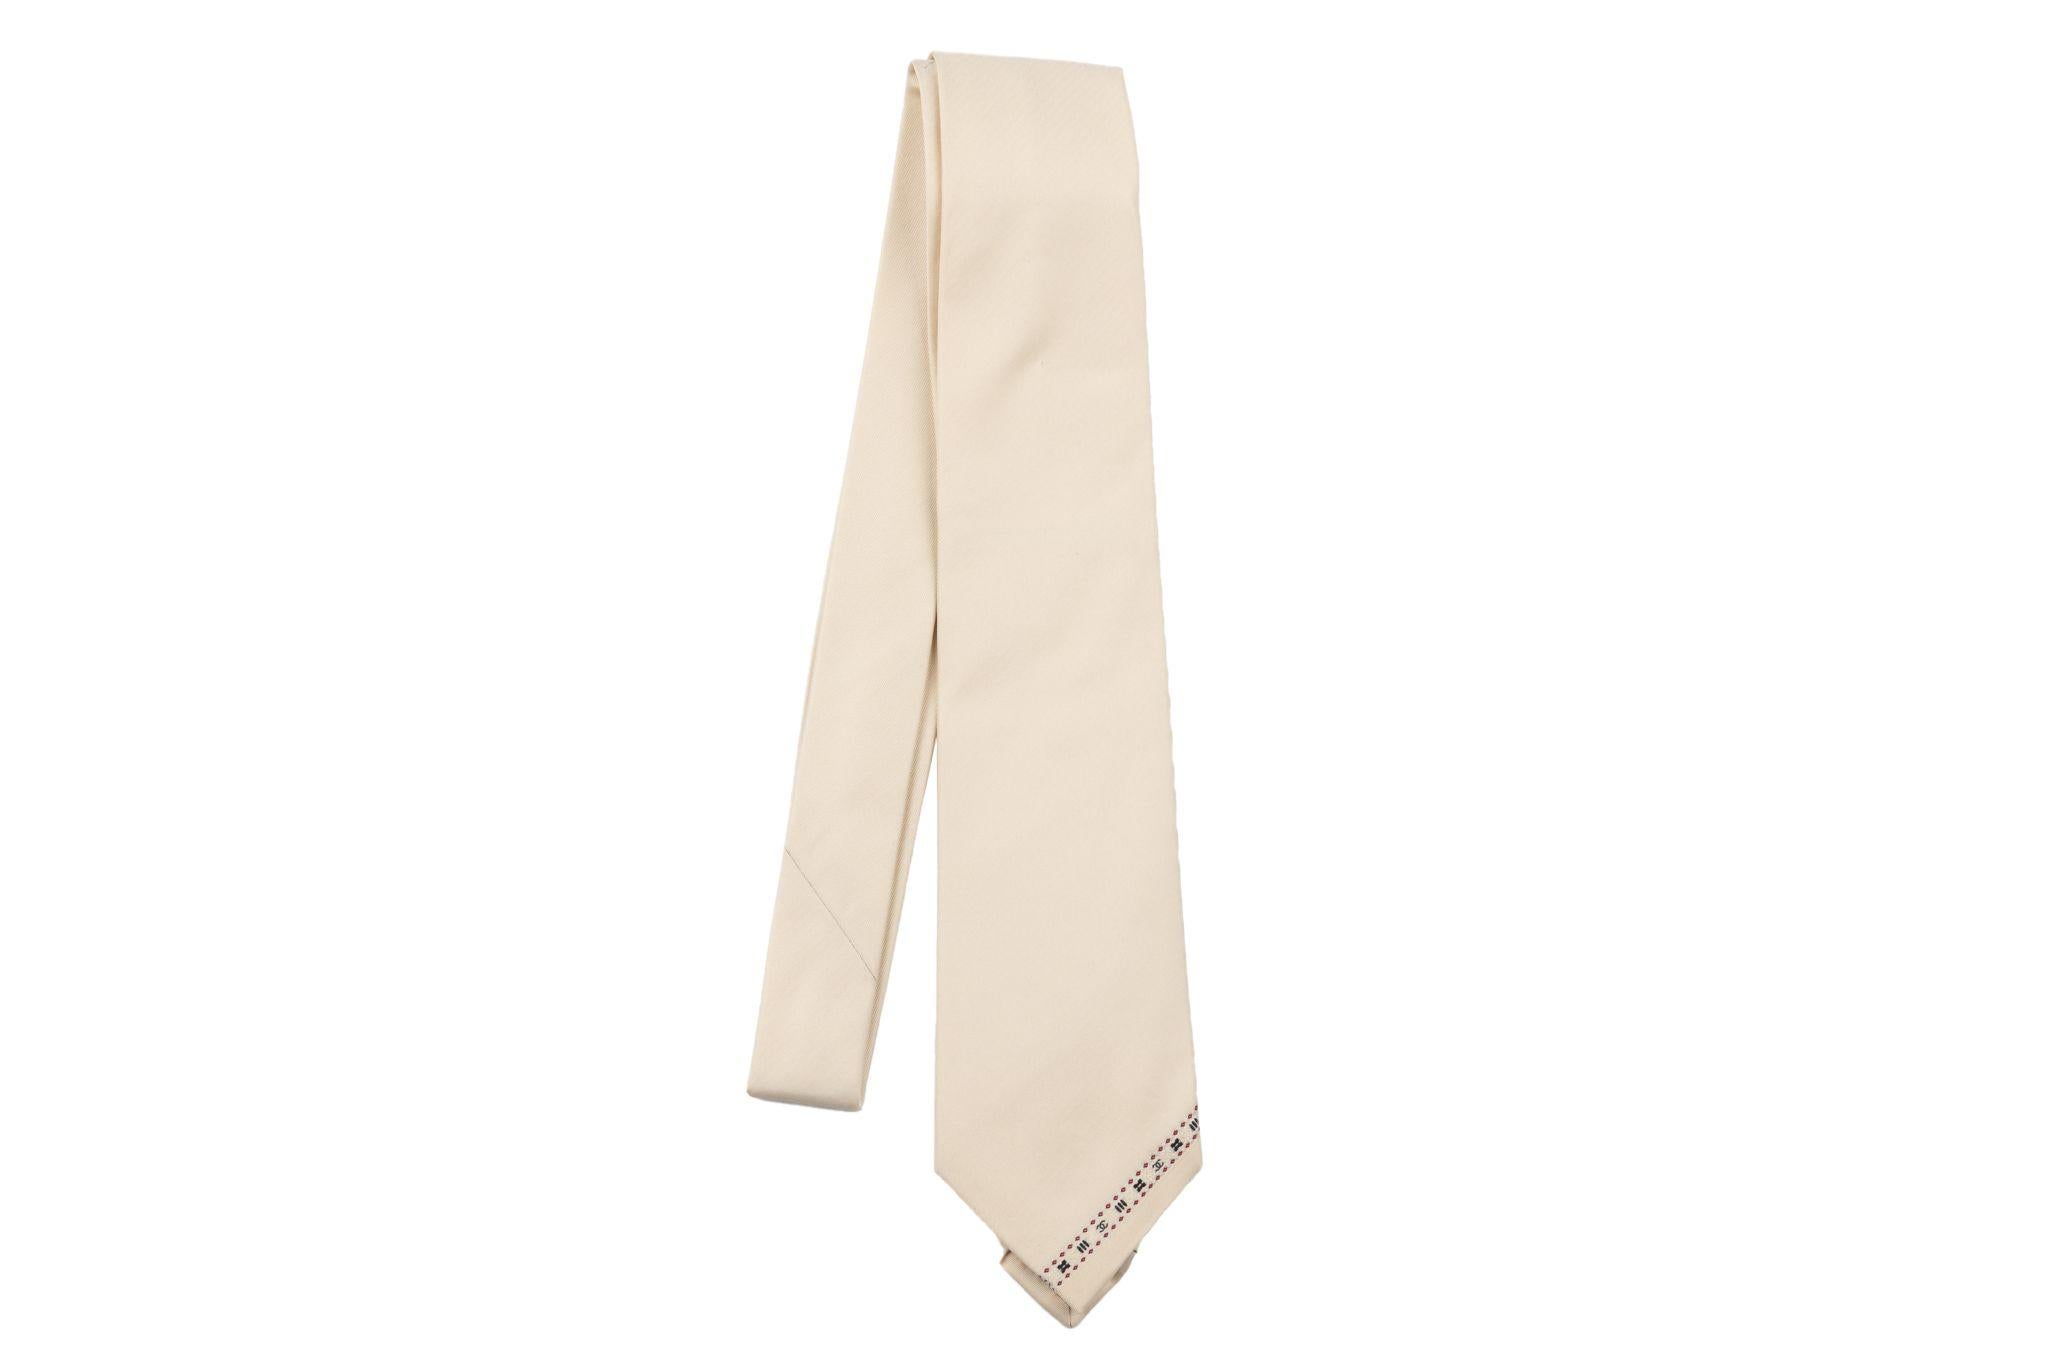 Cravate neuve Chanel 100% soie crème avec petits logos cc. Label de composition, étiquette de marque et chaîne de signature. Livré avec l'enveloppe d'origine.